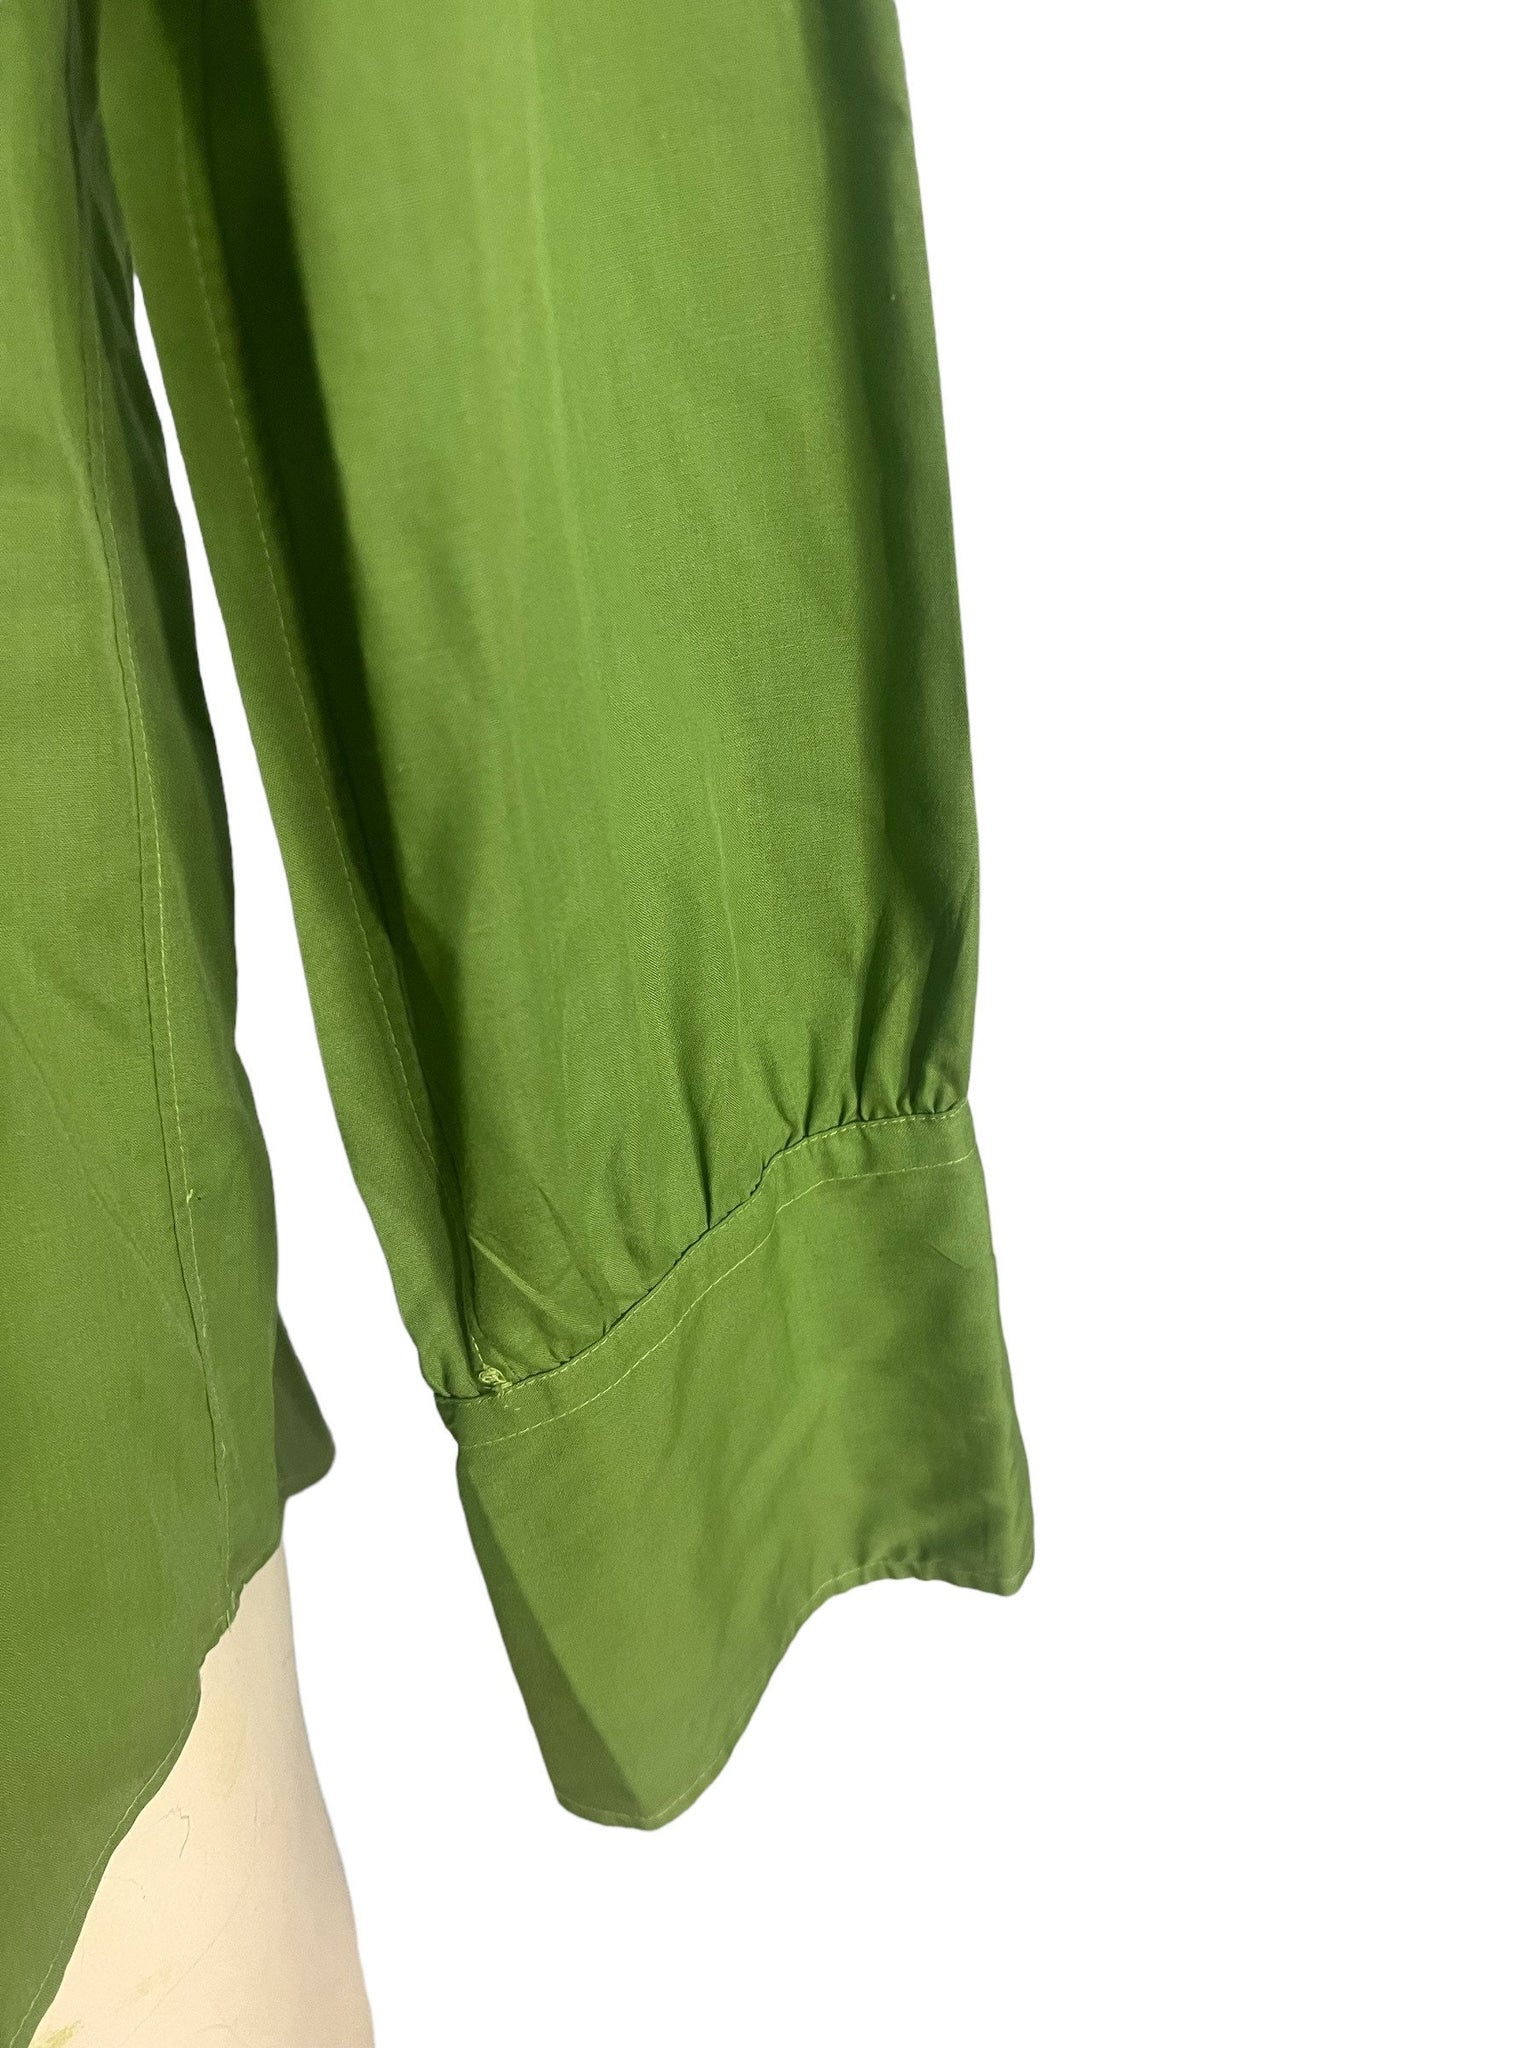 Vintage 70's green dress shirt Don Quixote L